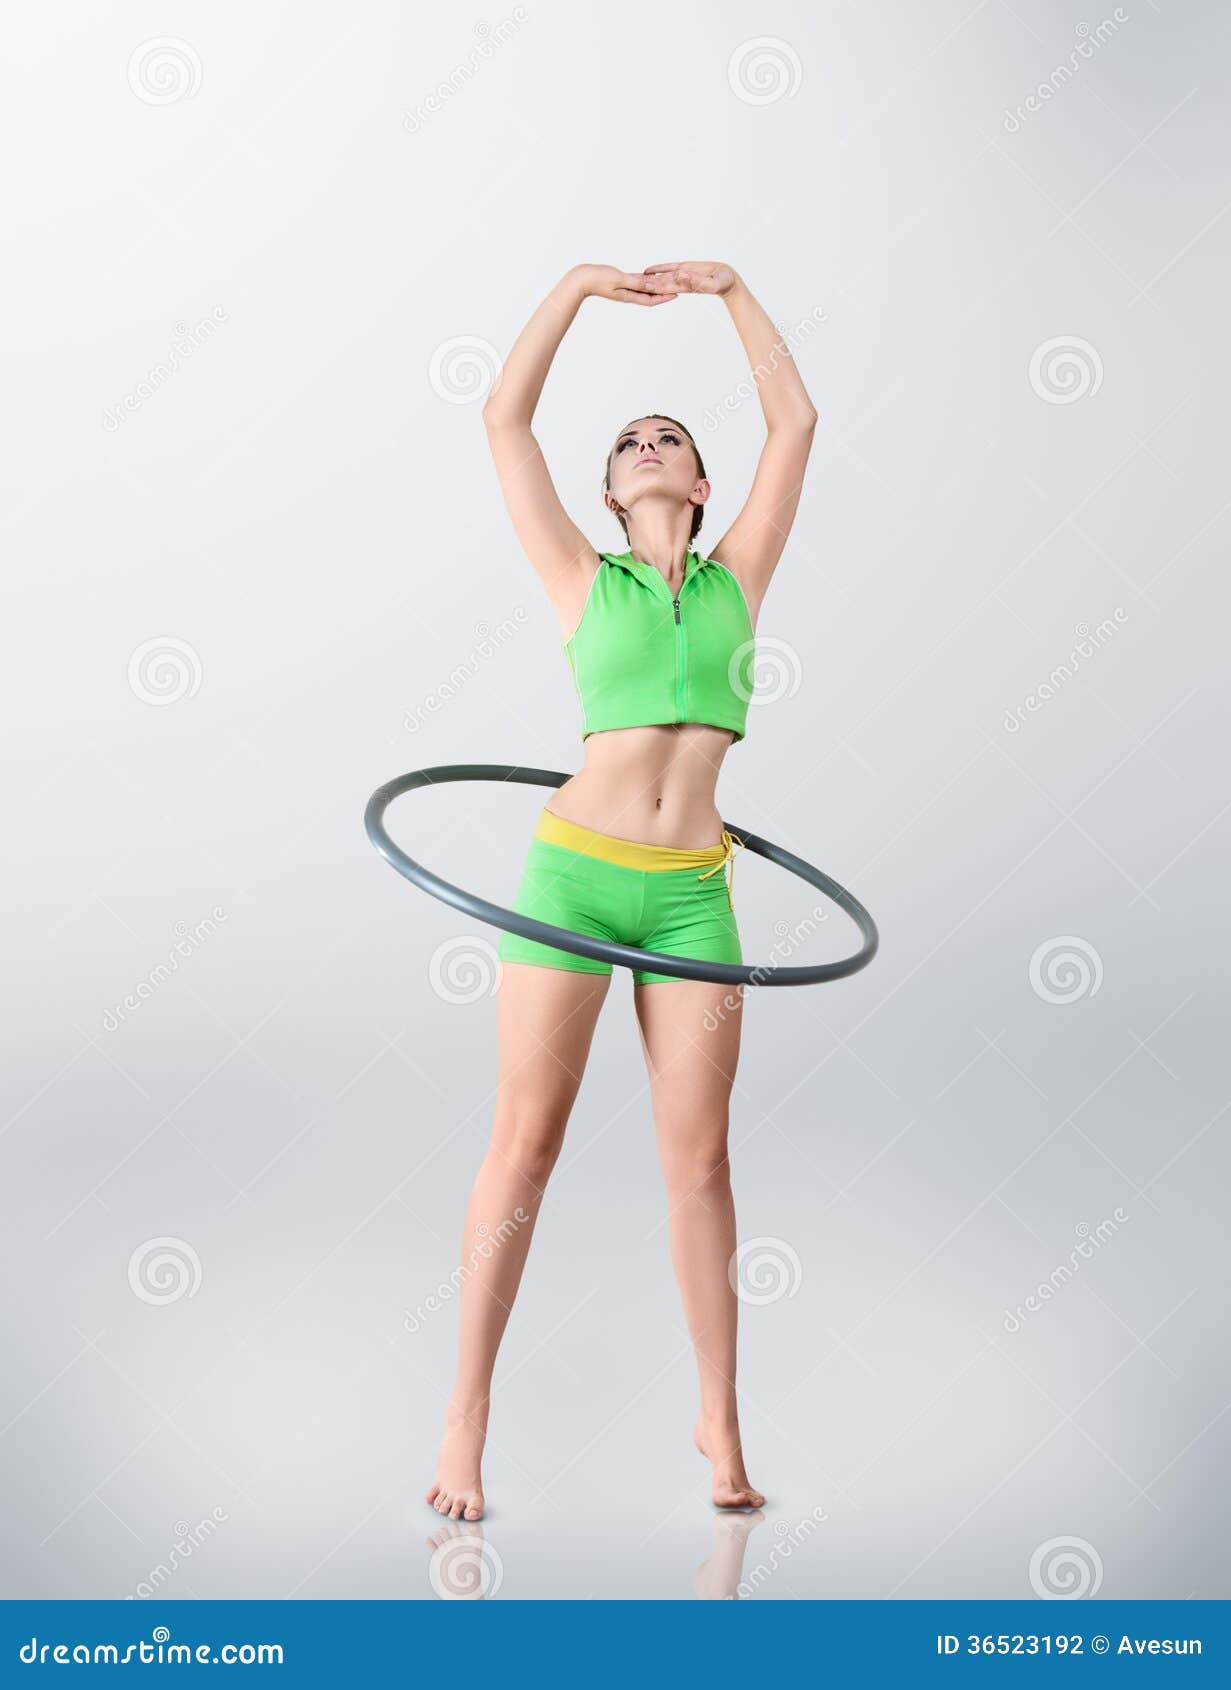 young woman rotating hula hoop